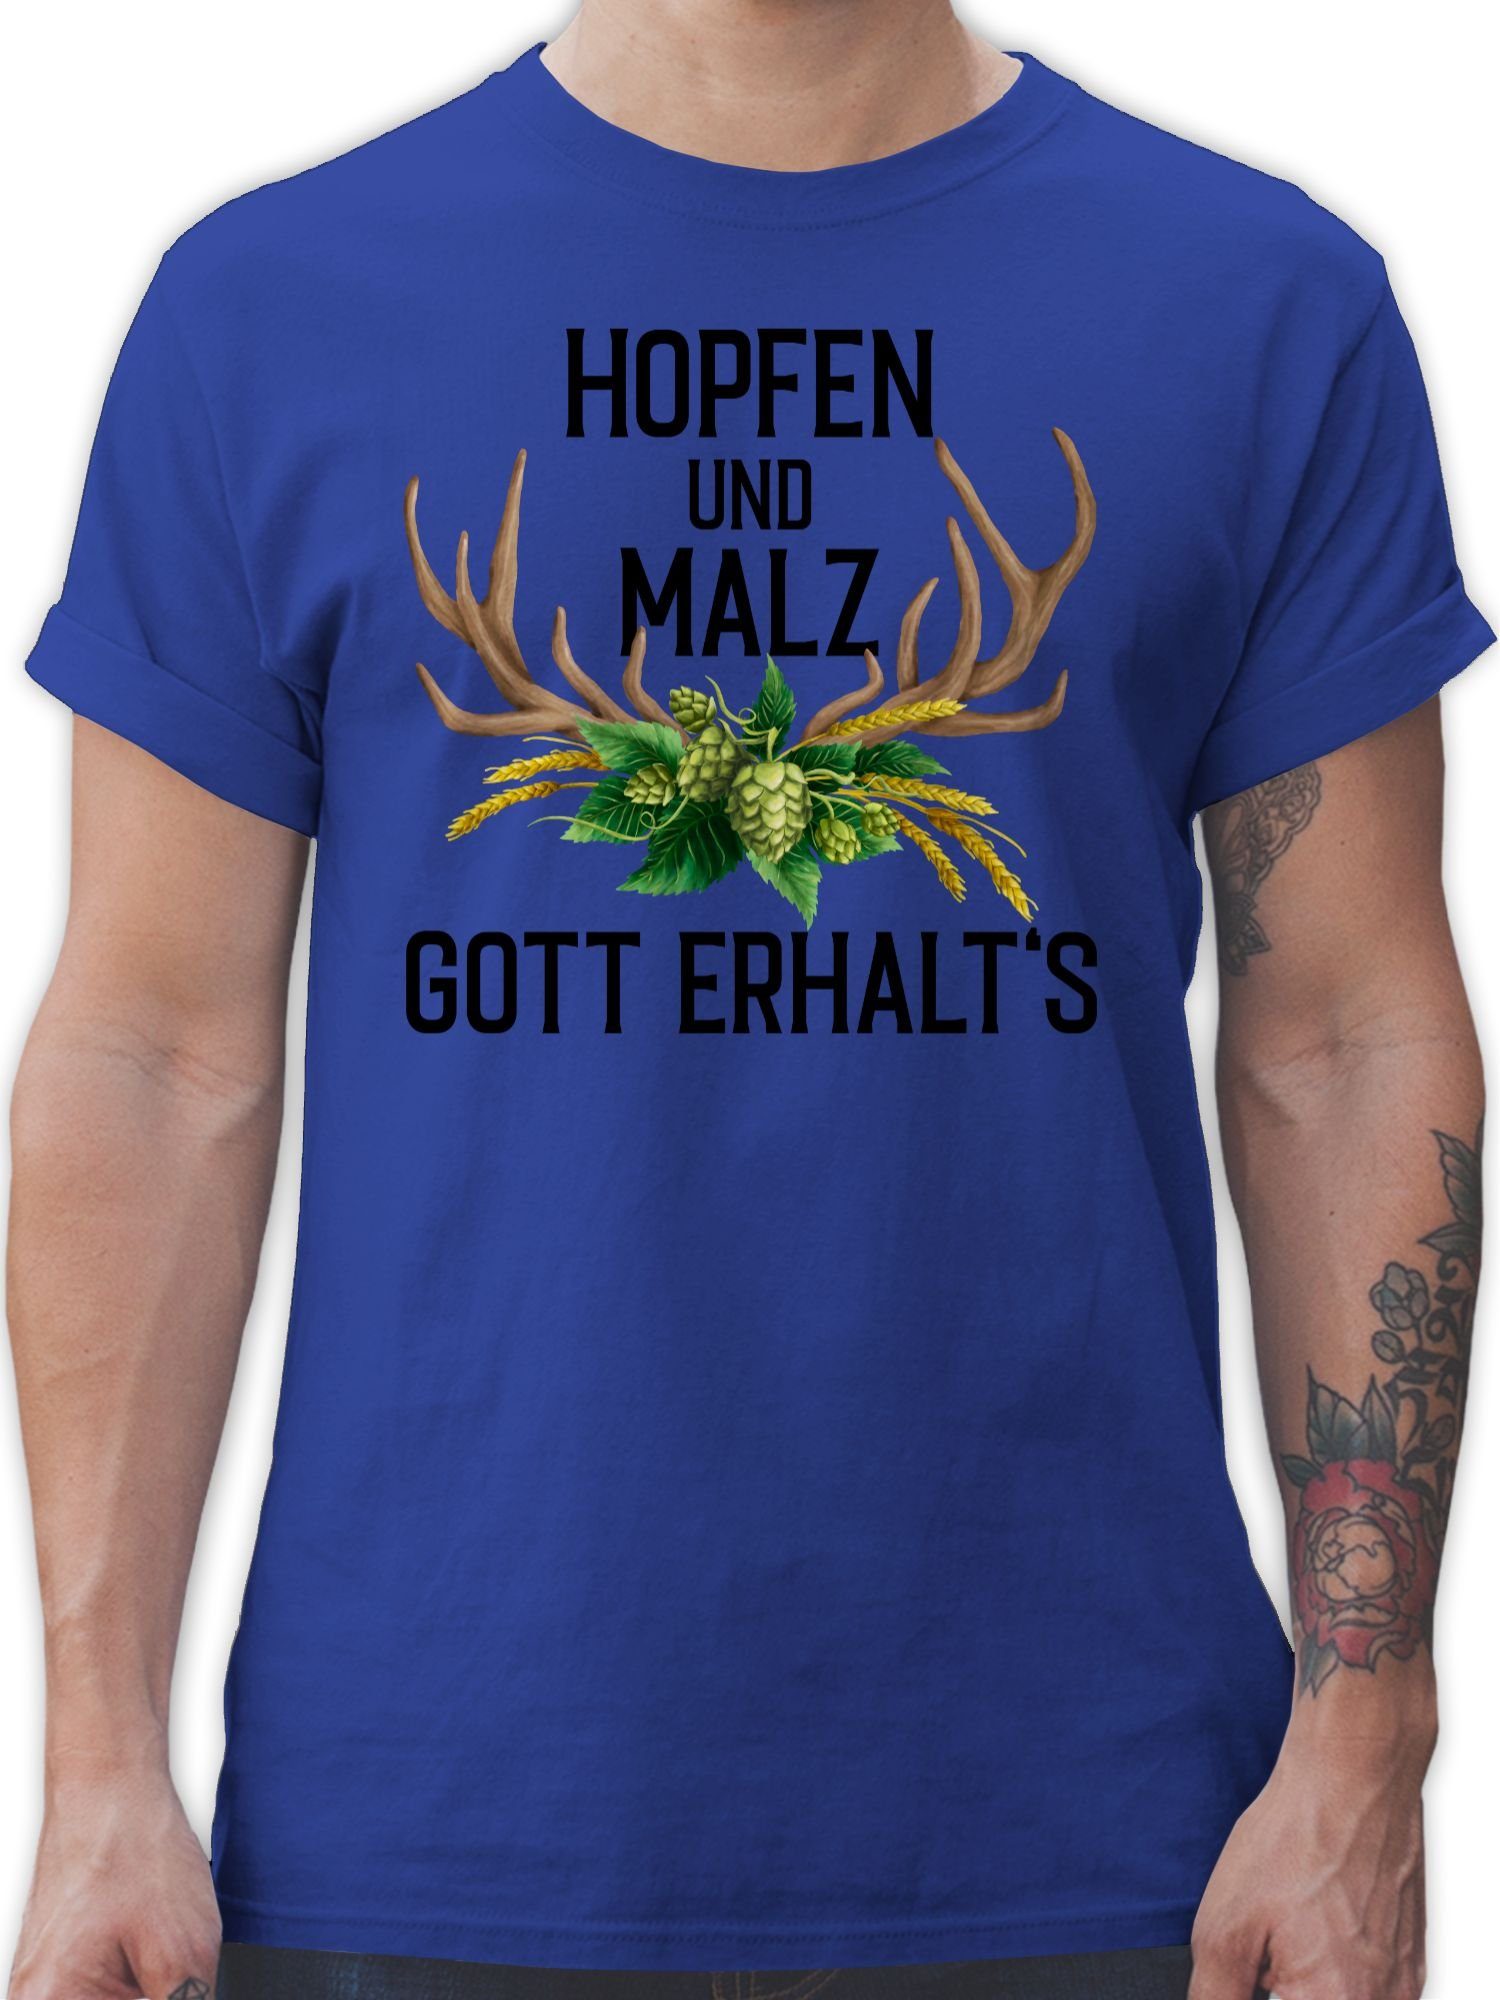 Hopfen T-Shirt für Gott & Shirtracer Weizen und Mode - Malz Geweih Royalblau Oktoberfest 1 erhalt's Herren mit